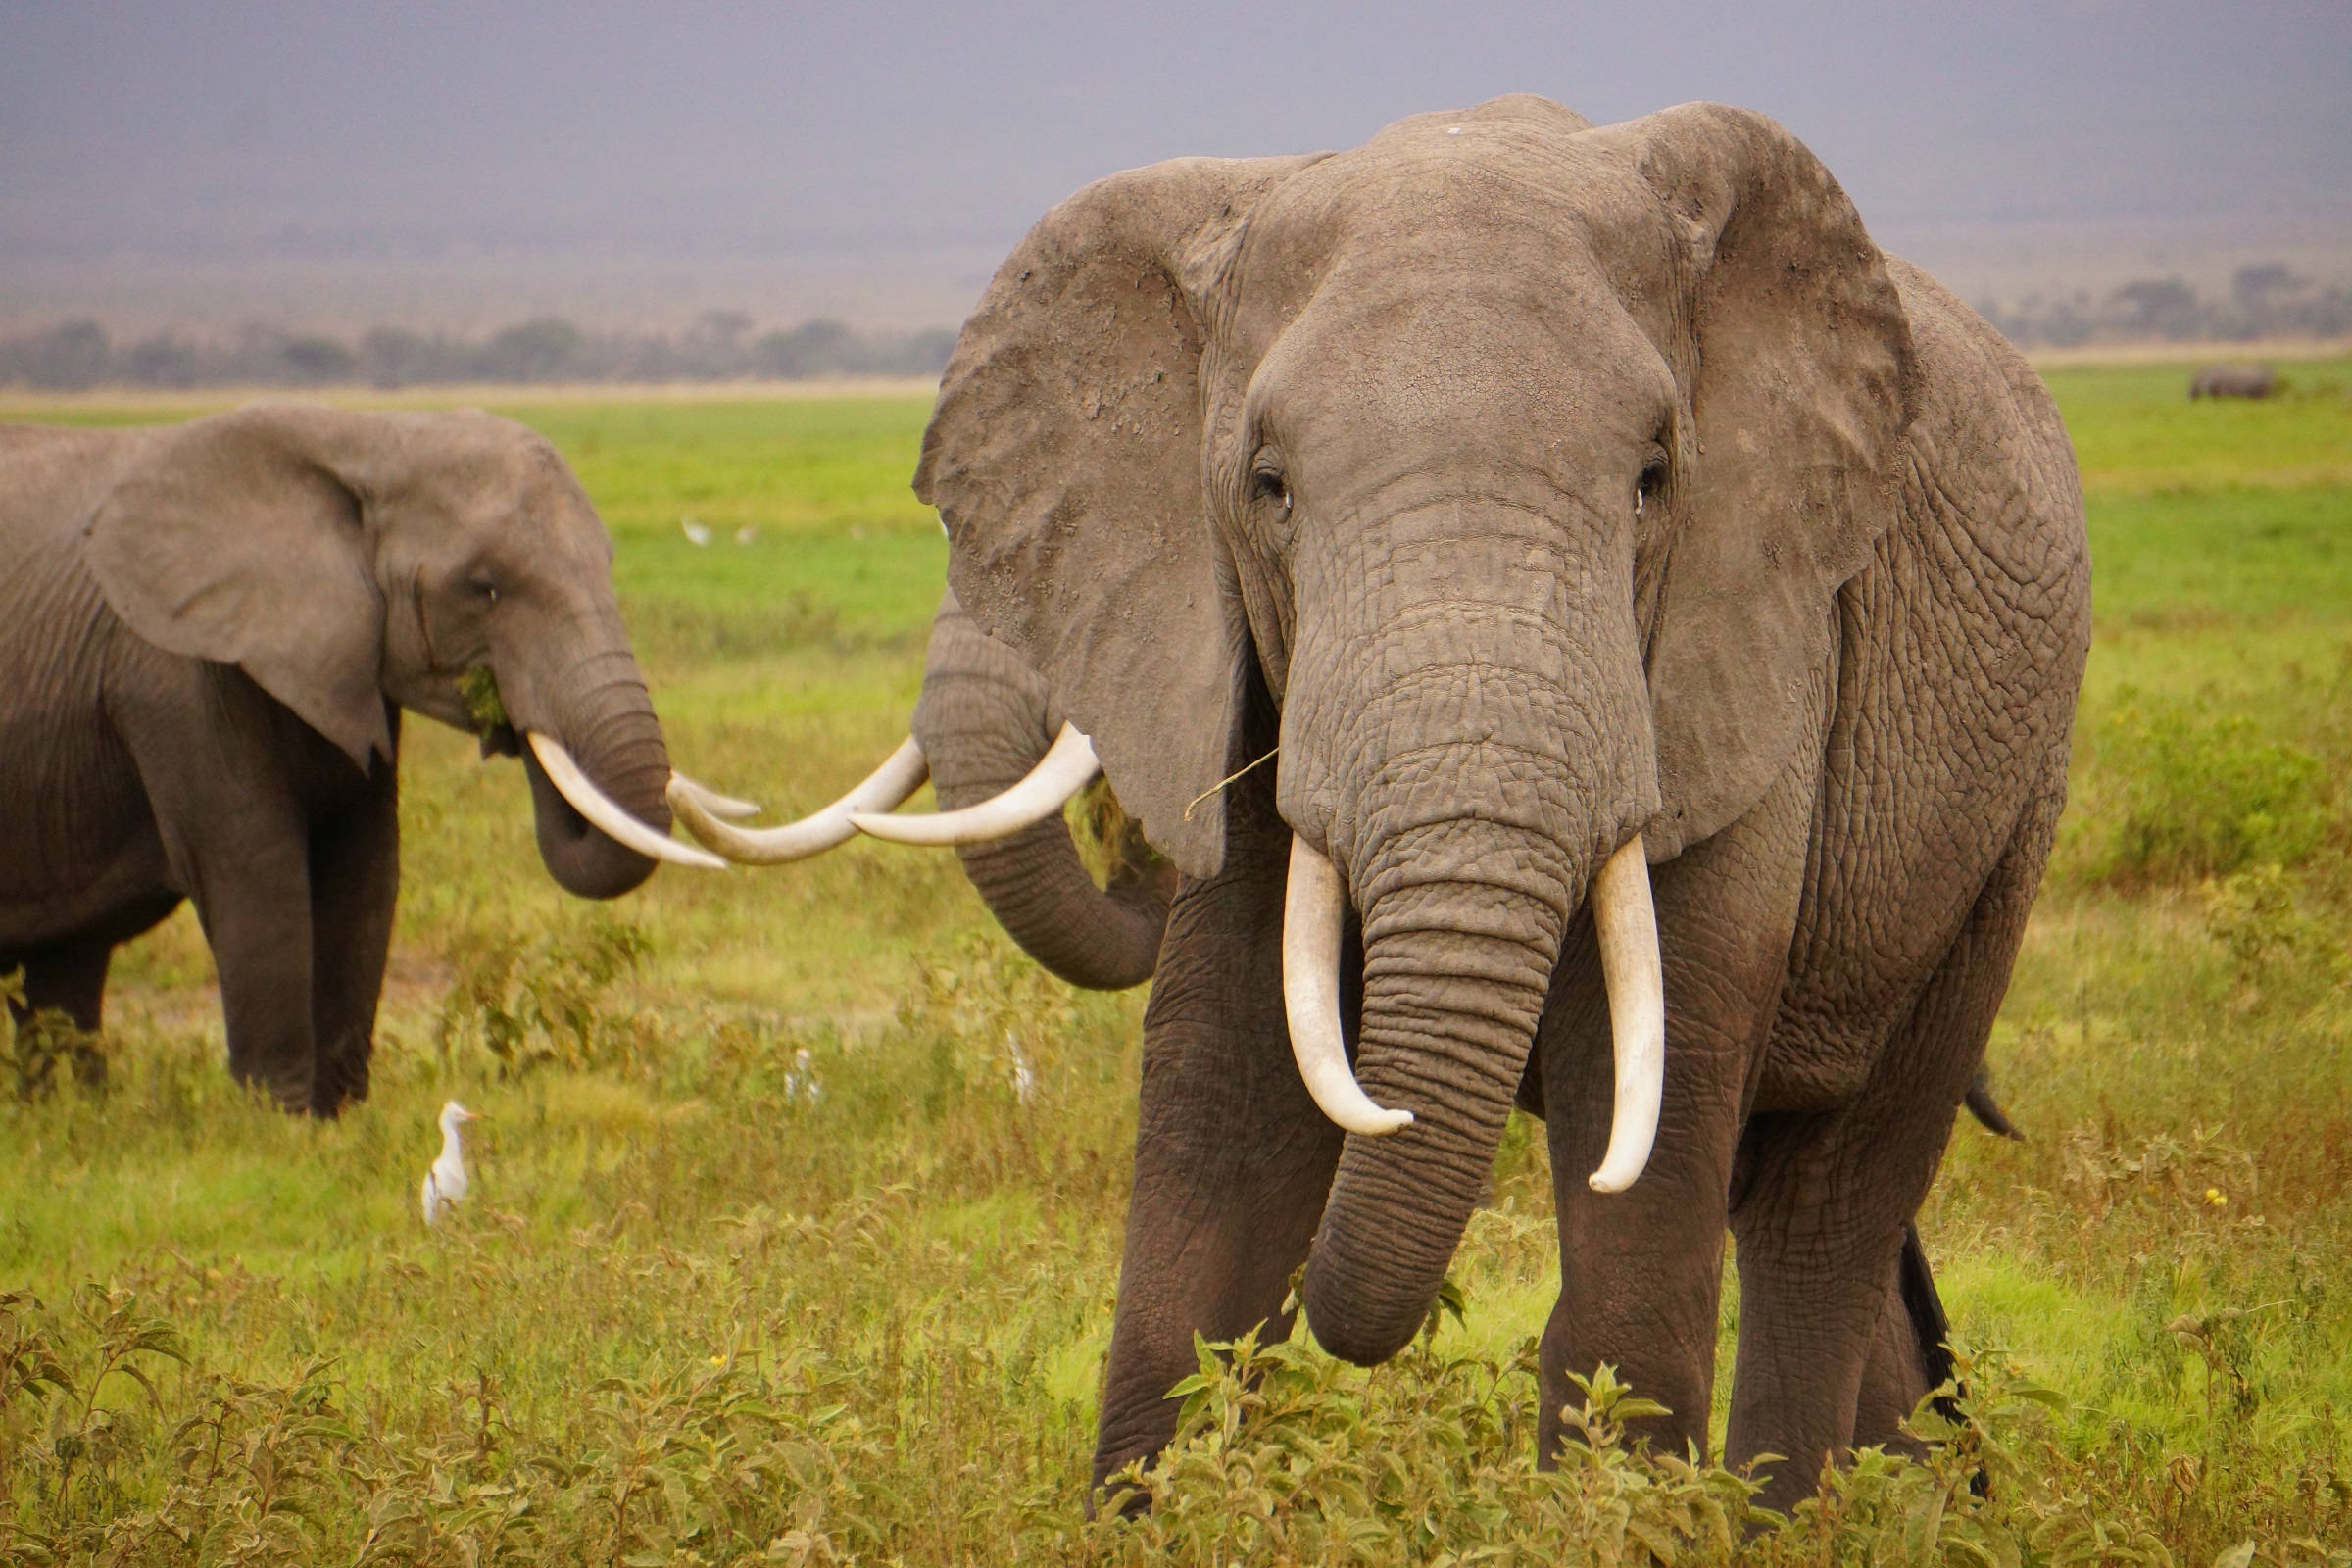 Внешний вид слонов. Бивни африканского слона. Хобот и бивни слона. Африканский слон с большими бивнями. Слон с длинными бивнями.